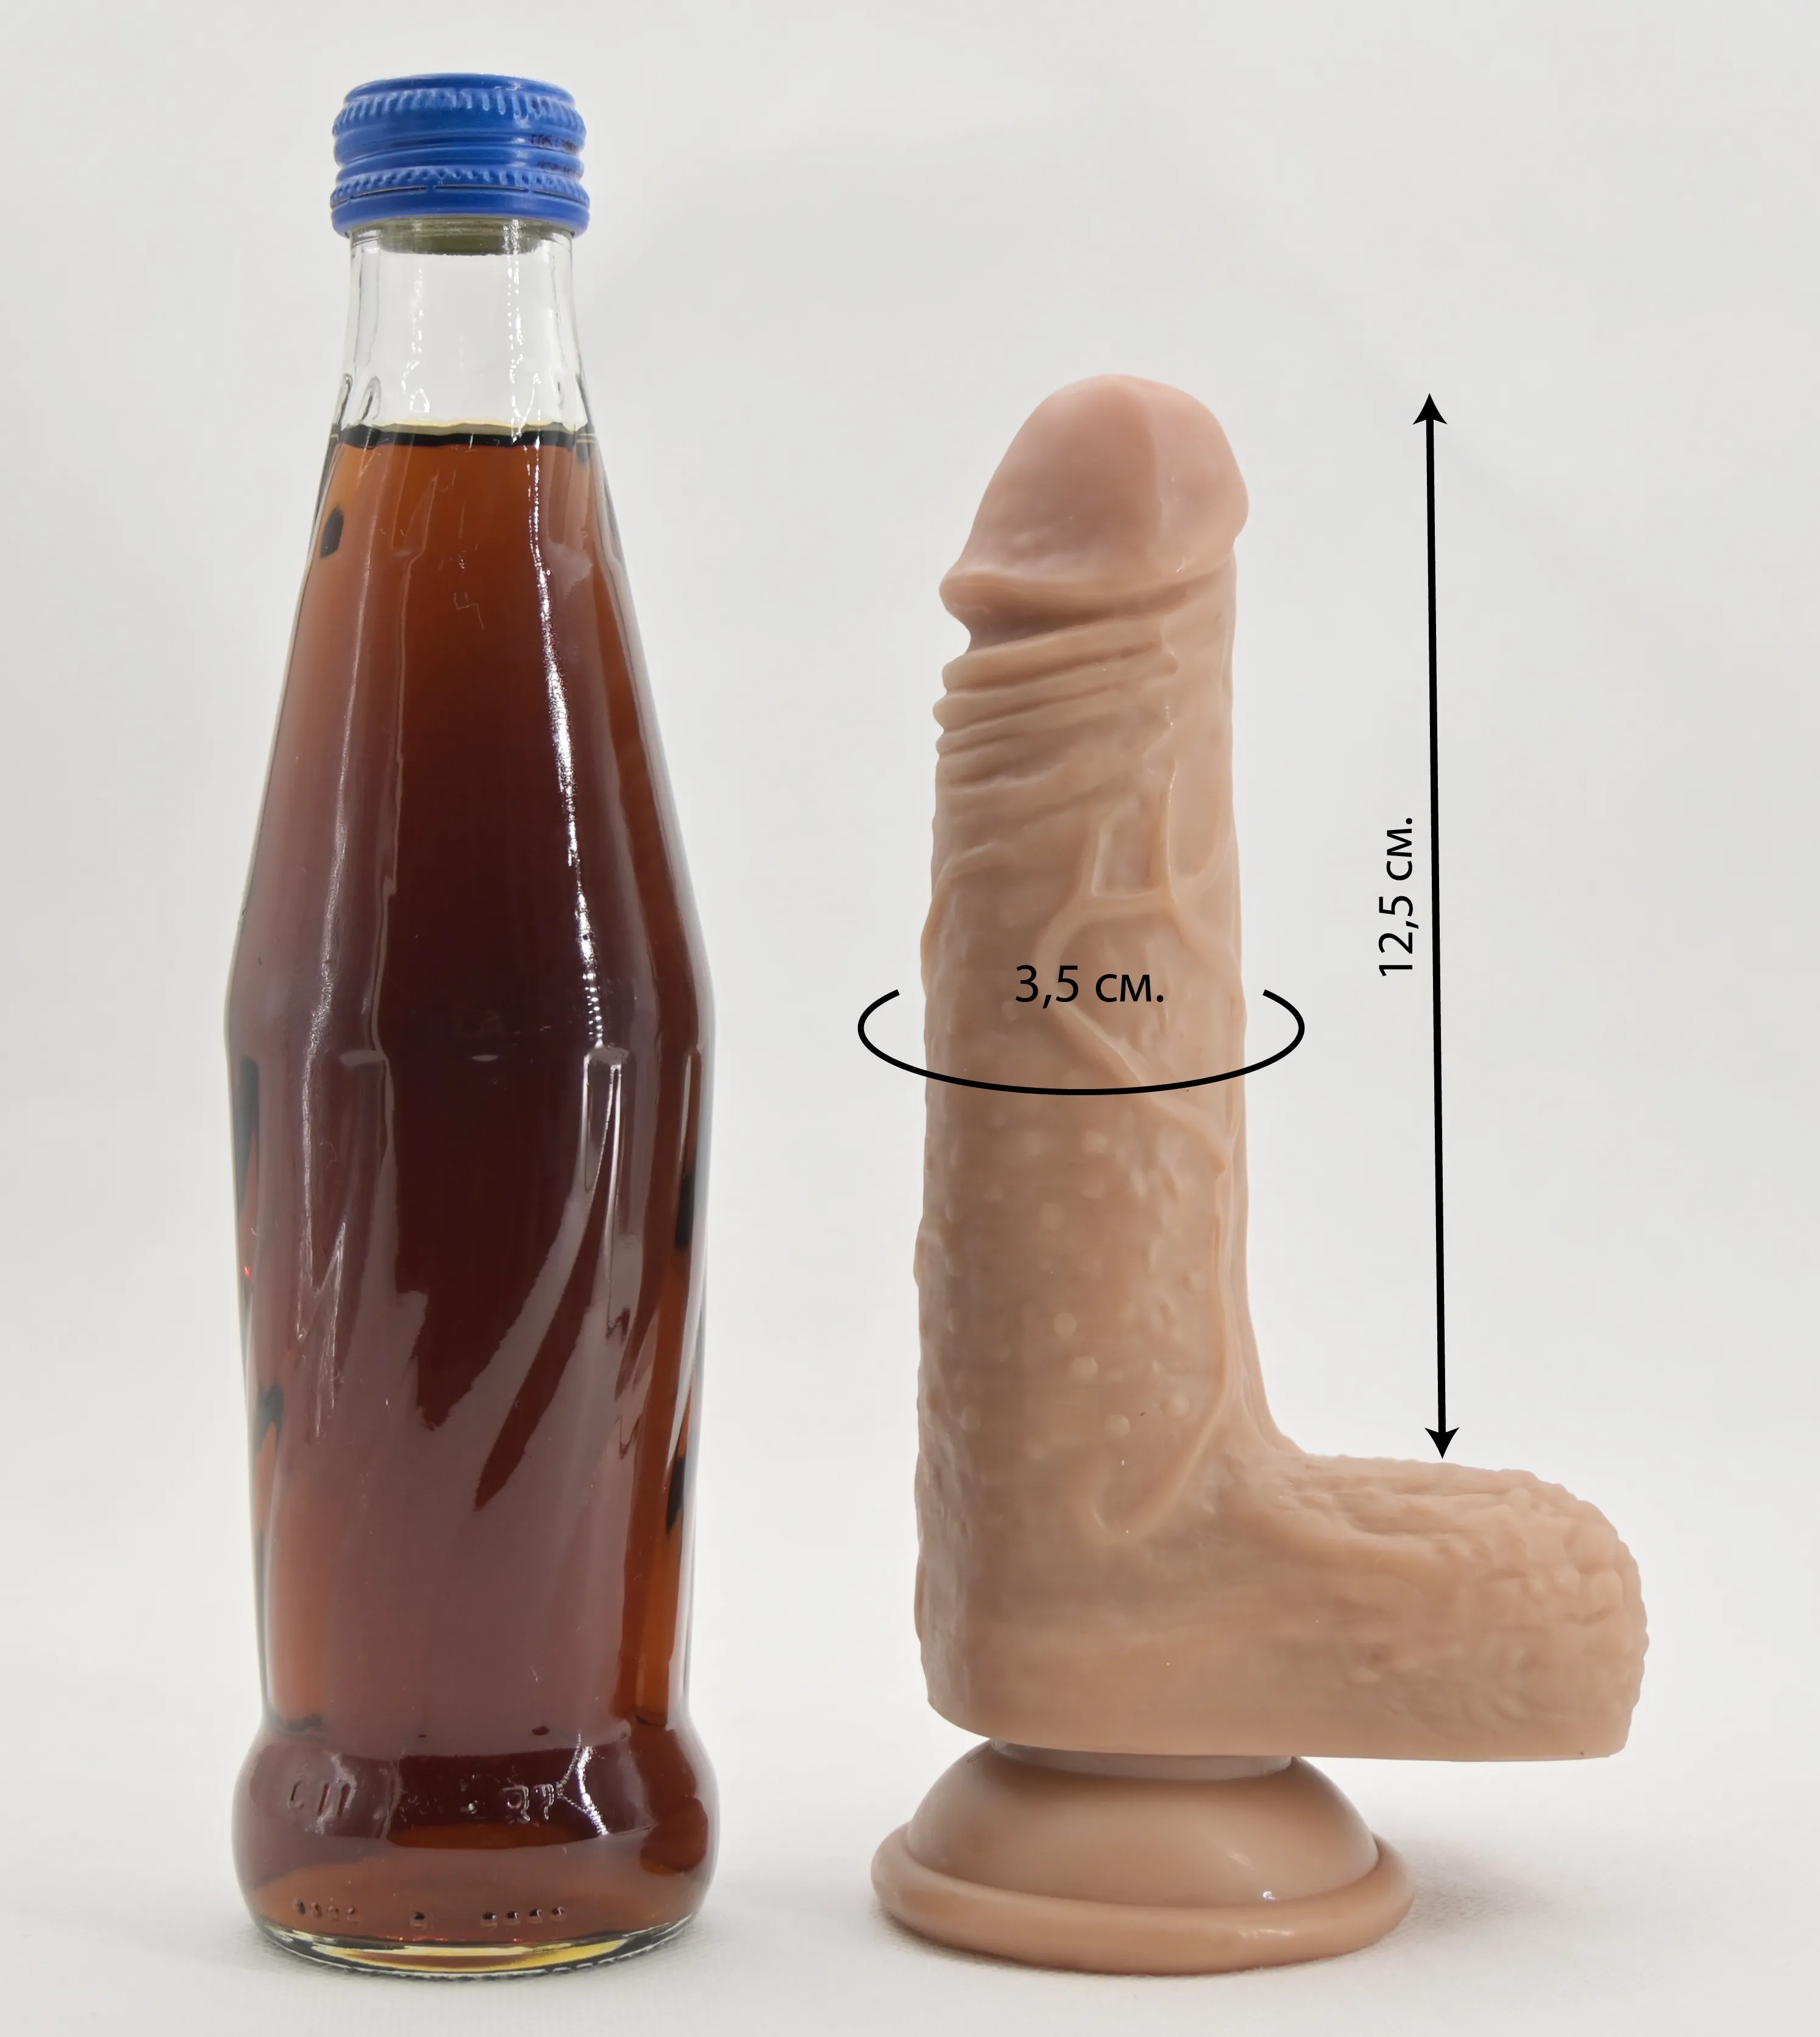 Размеры дилдо и сравнение размера со стеклянной бутылкой газировки 0,33 л.